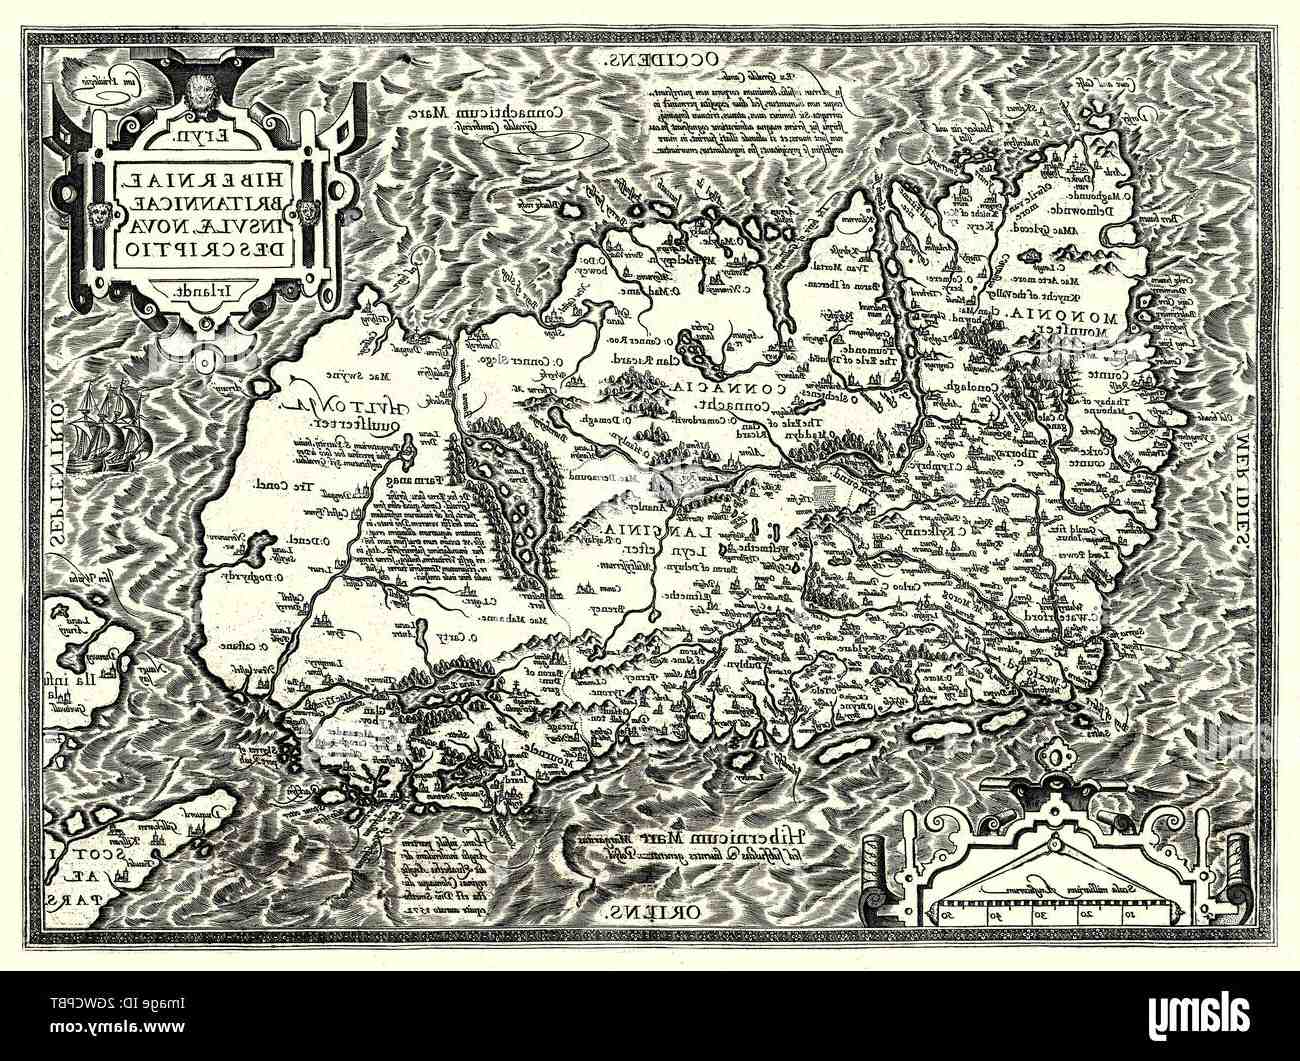 ¿Qué confeccionó Abraham Ortelius de 1570 y qué características tiene?